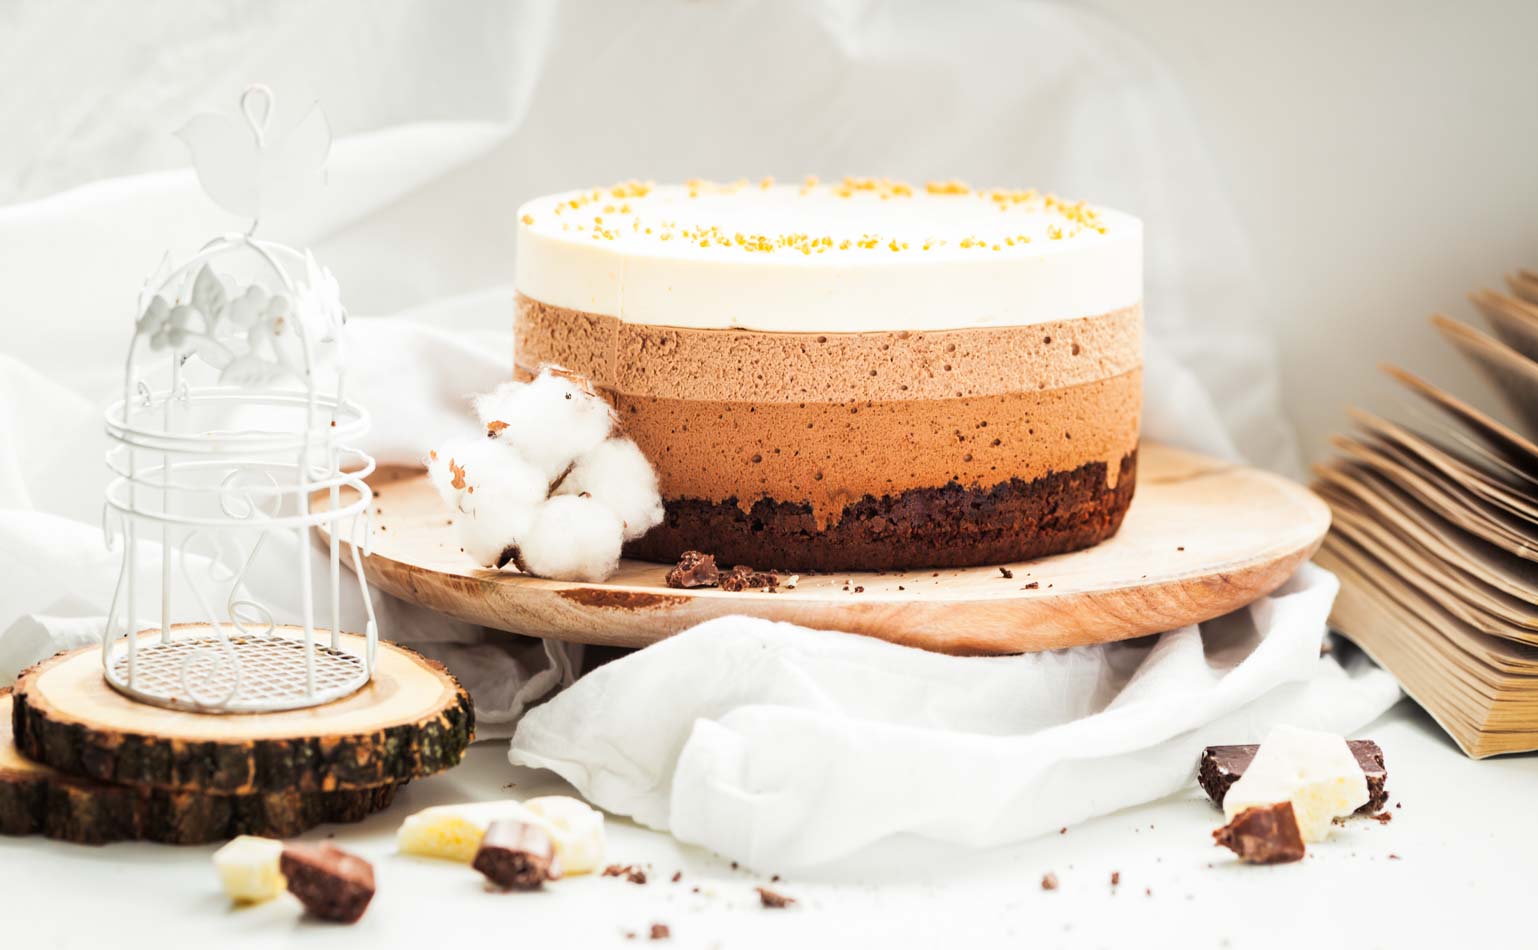 Se você é um amante de chocolate e quer experimentar uma sobremesa irresistível, a Torta 3 Mousses de Chocolate é a escolha perfeita. Com três camadas de mousse de chocolate, esta sobremesa é uma explosão de sabor e textura em cada mordida.